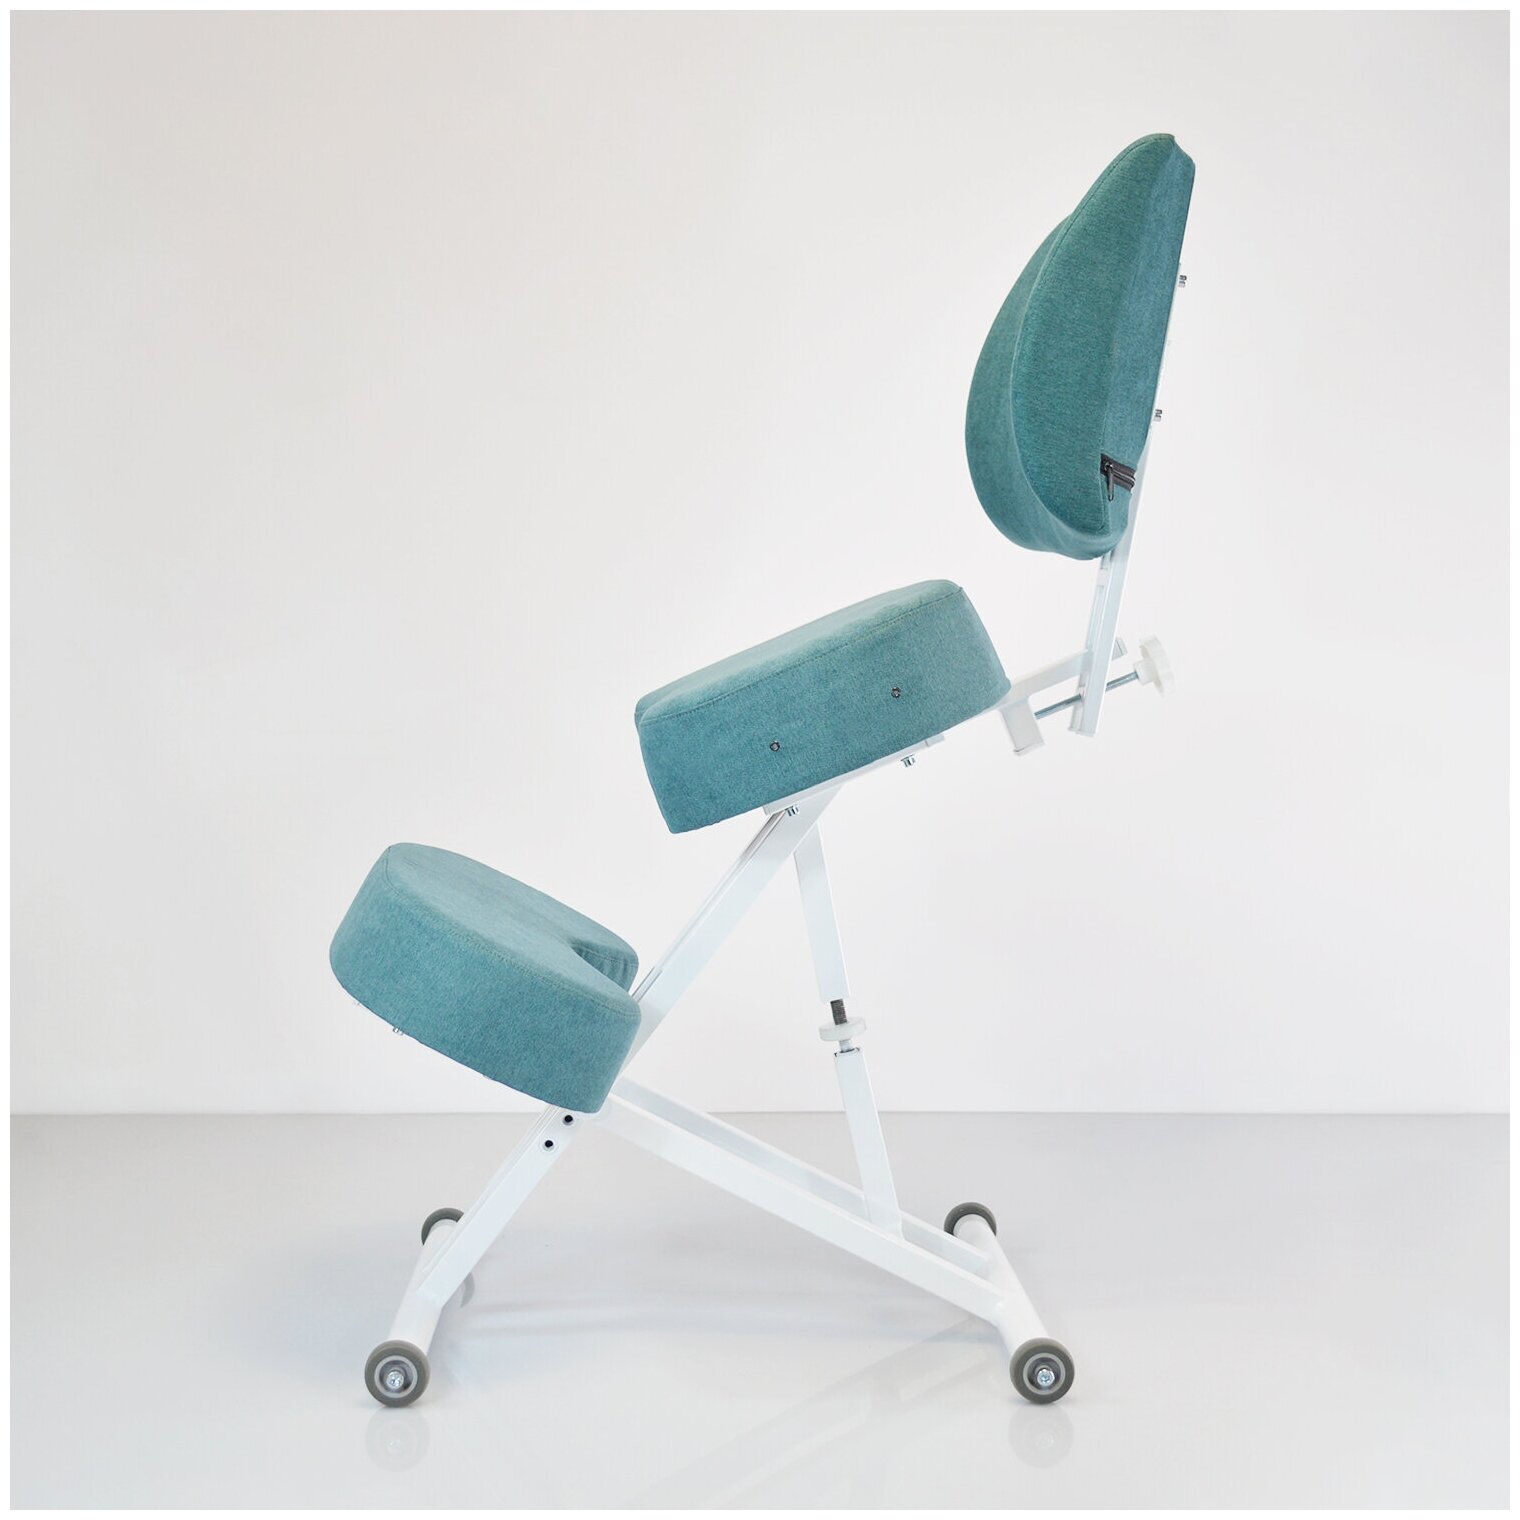 Эргономичный коленный стул - комфорт со спинкой Олимп